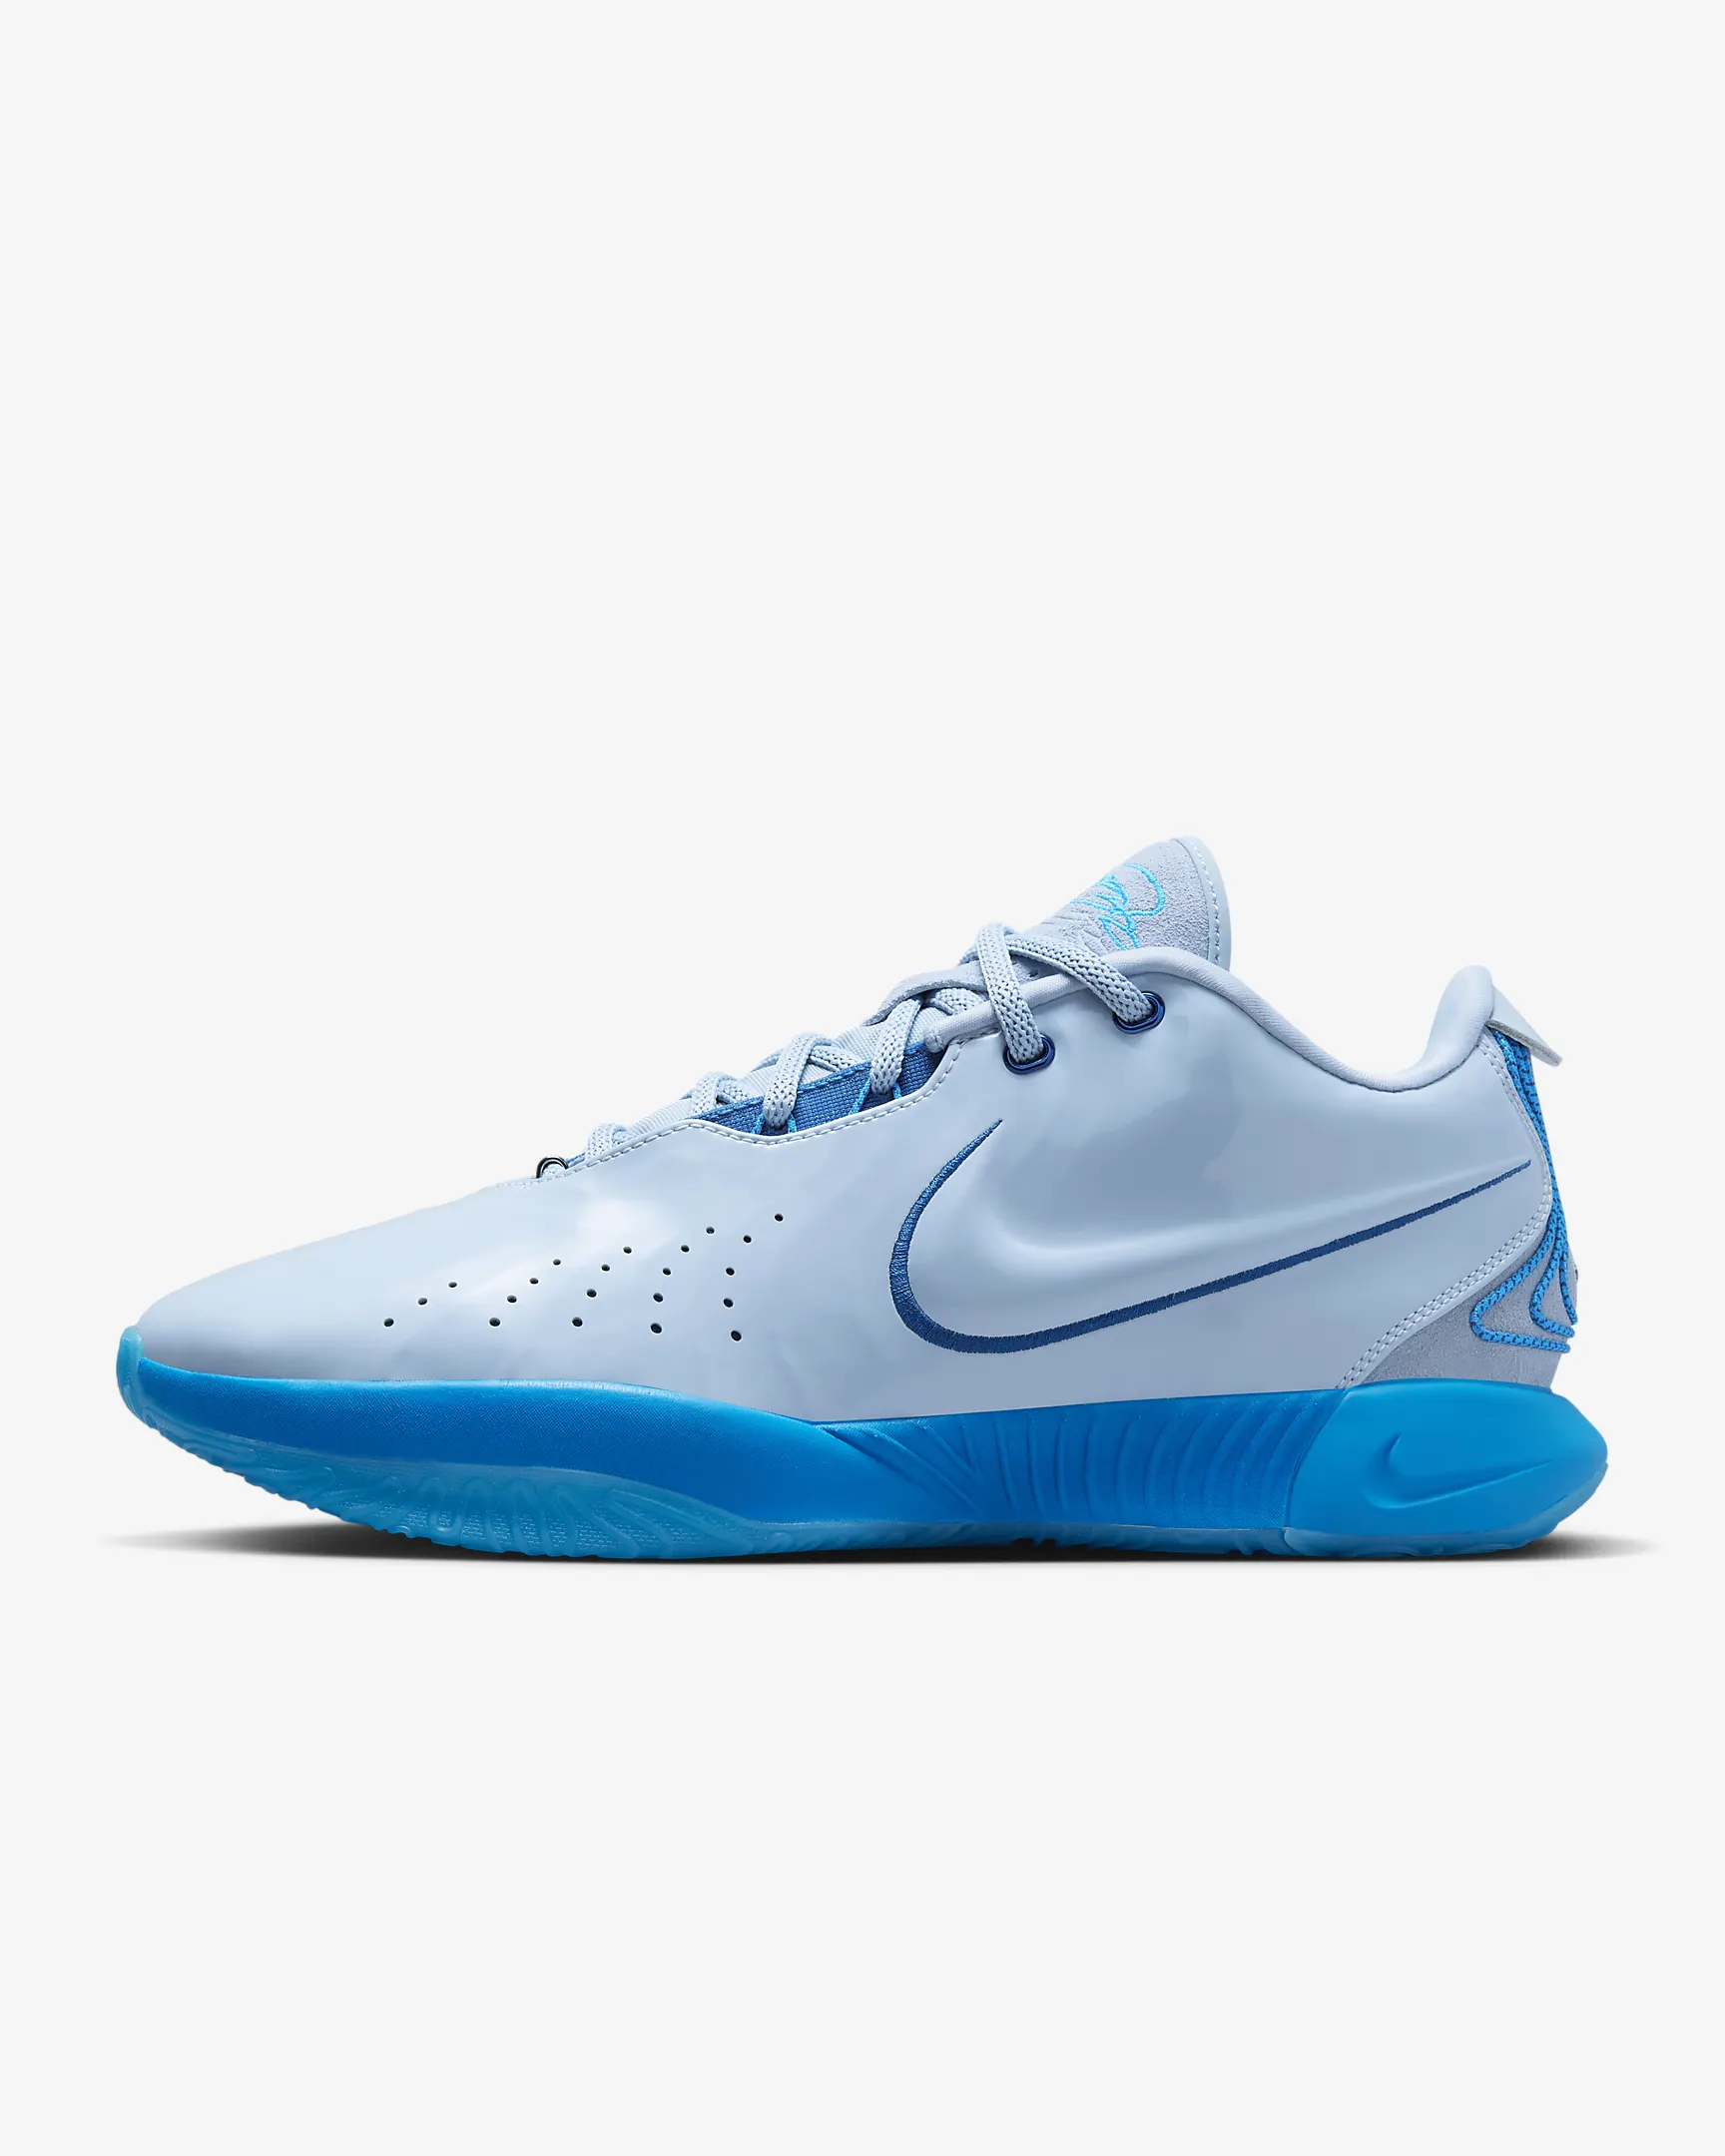 Nike LeBron XXI Basketball Shoes FQ4052-400